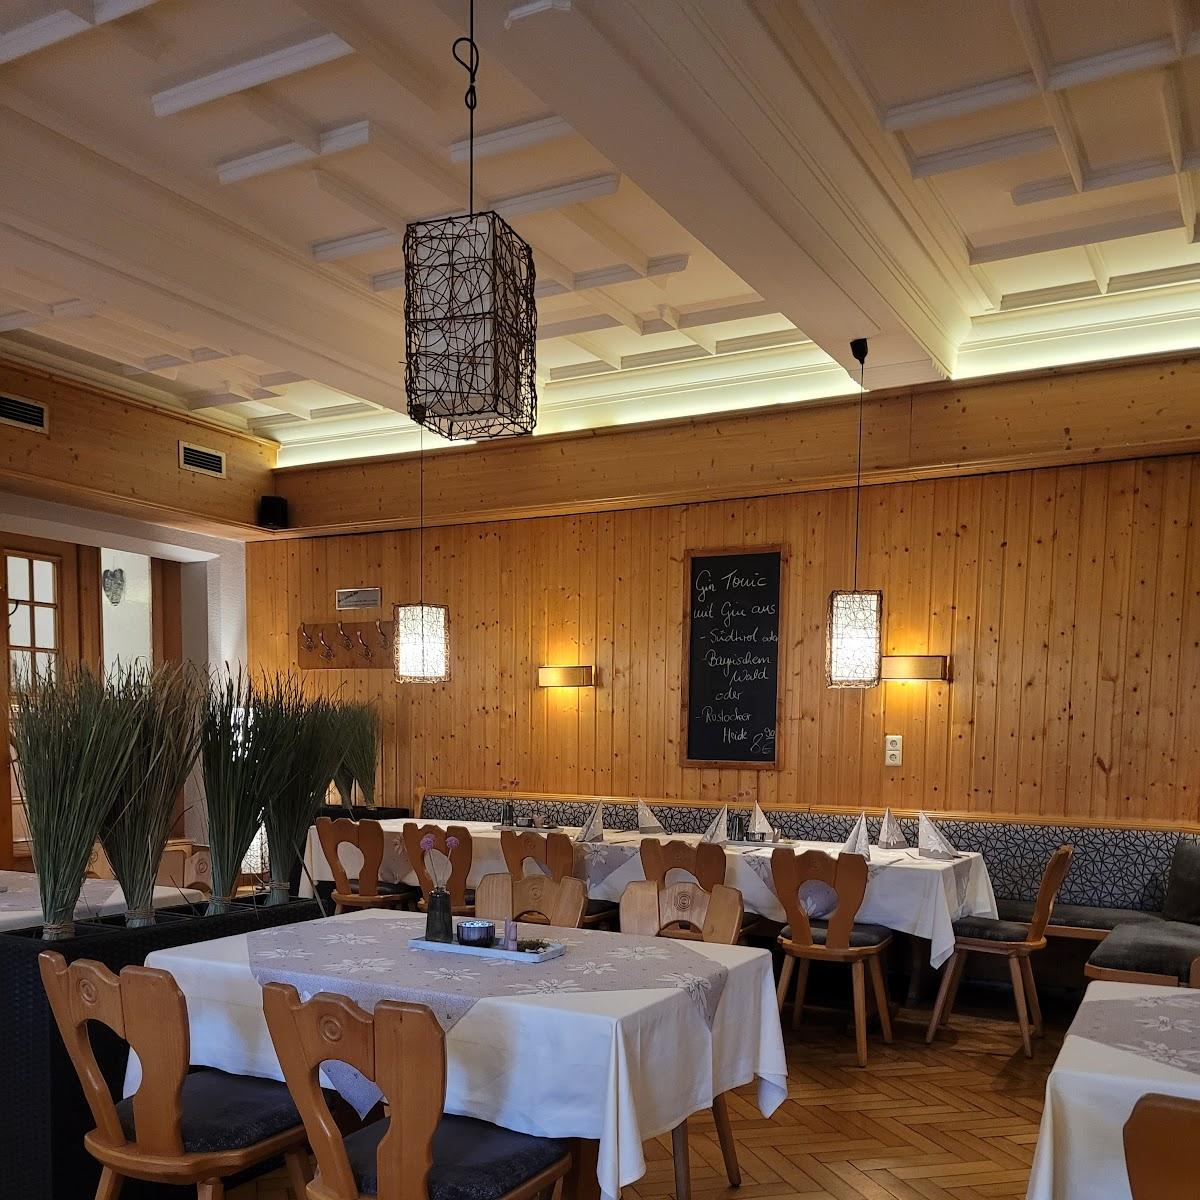 Restaurant "Ratskeller" in Wilkau-Haßlau